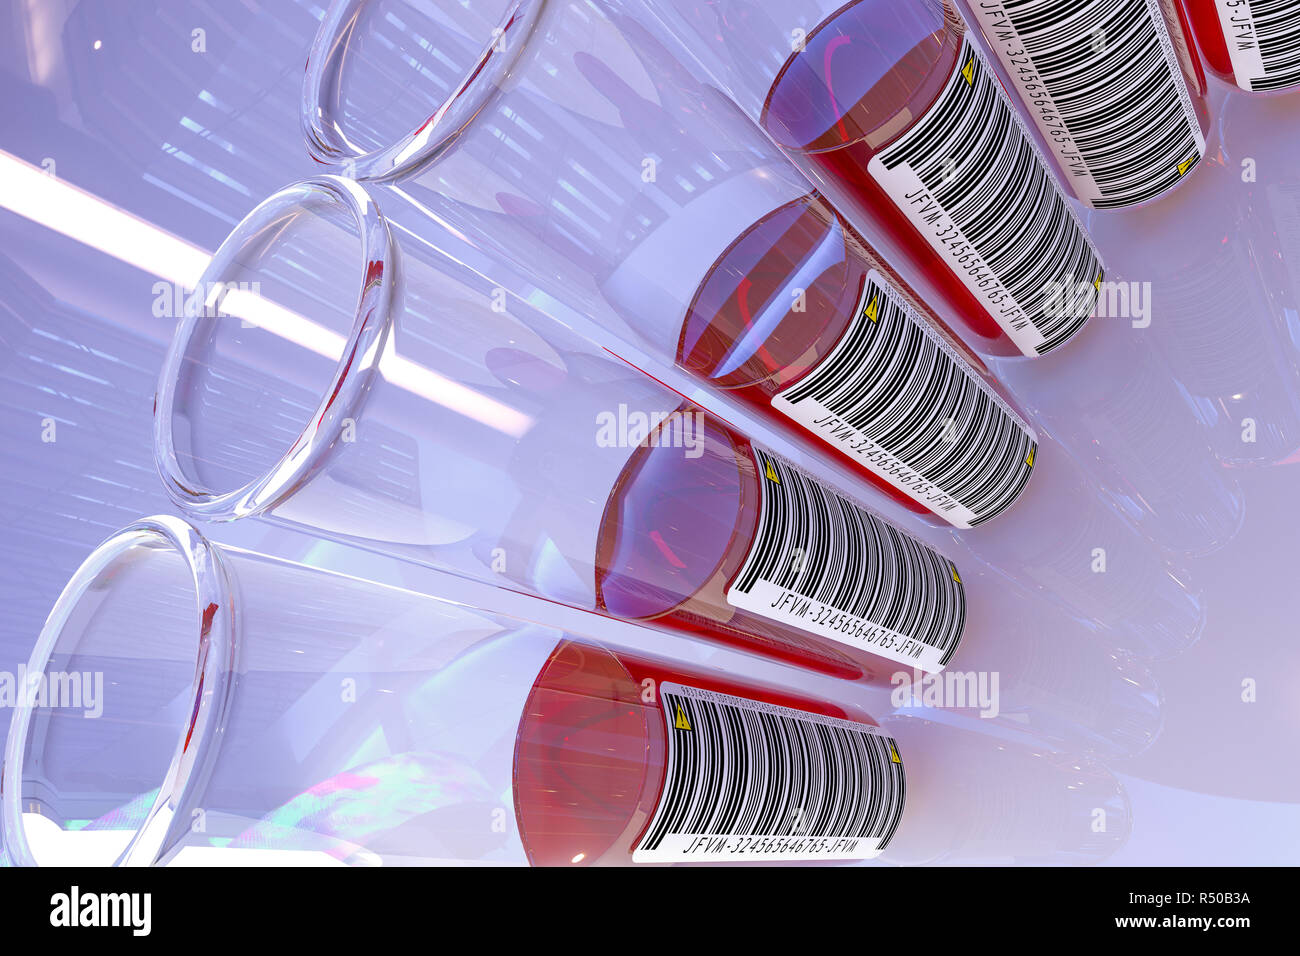 Einige Labor Vasen Rohr mit Blut samplest, mit Barcodes und Warnsymbole gekennzeichnet, die Proben infiziert sind oder einige potenzielle Gefahr haben Stockfoto